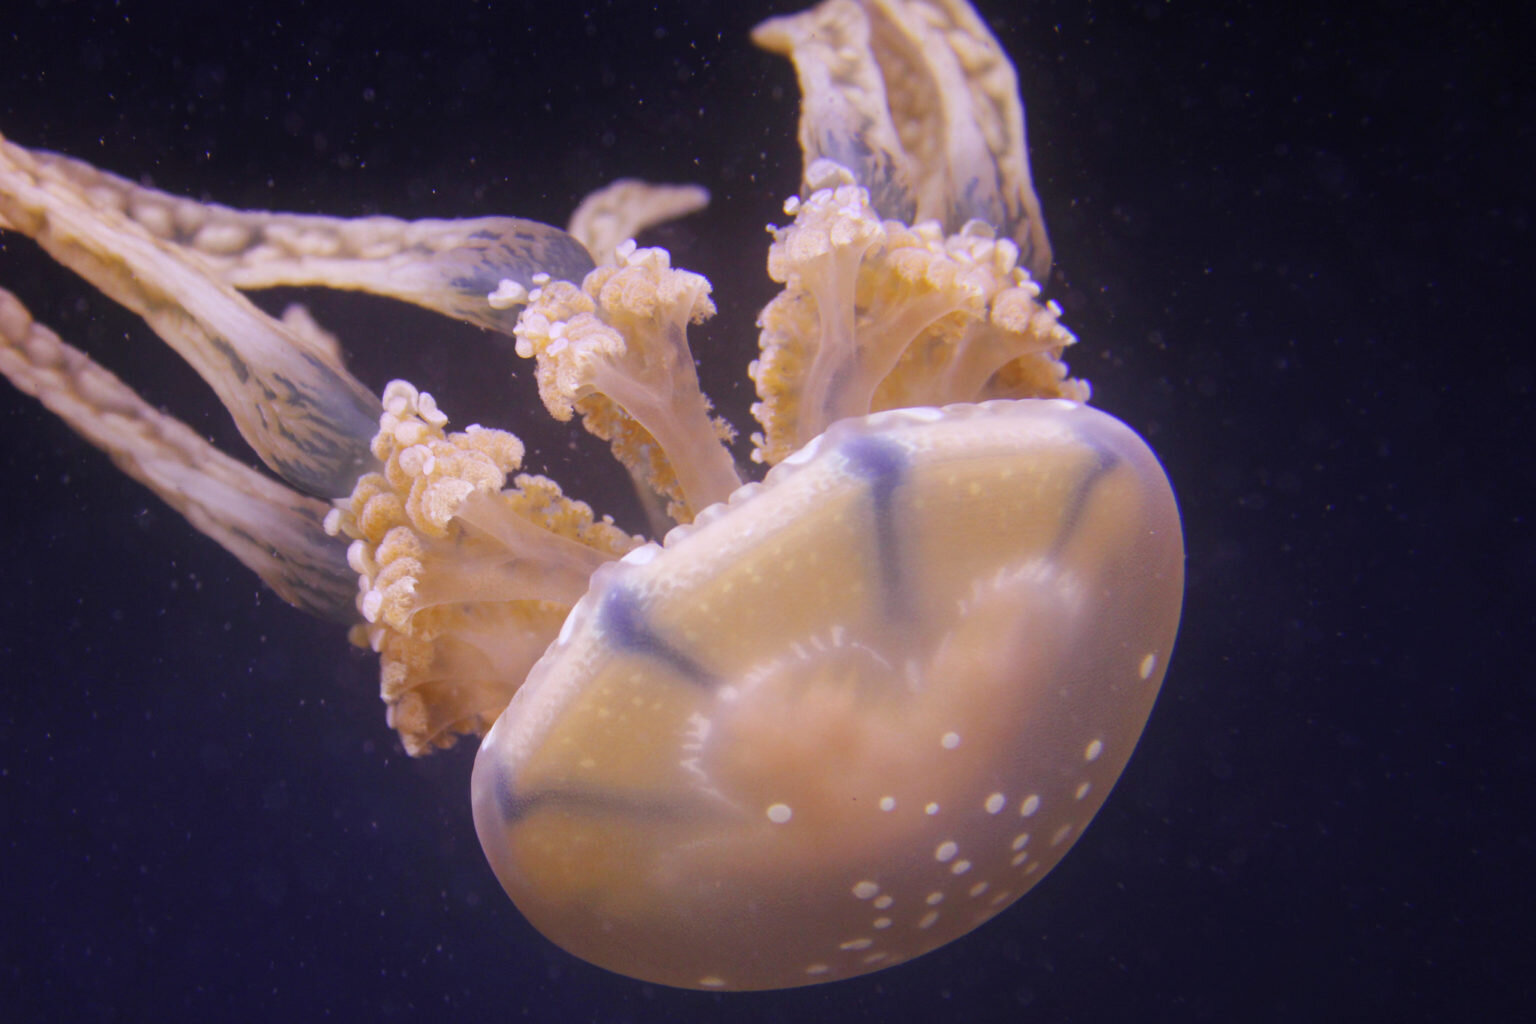 морская оса медуза фото